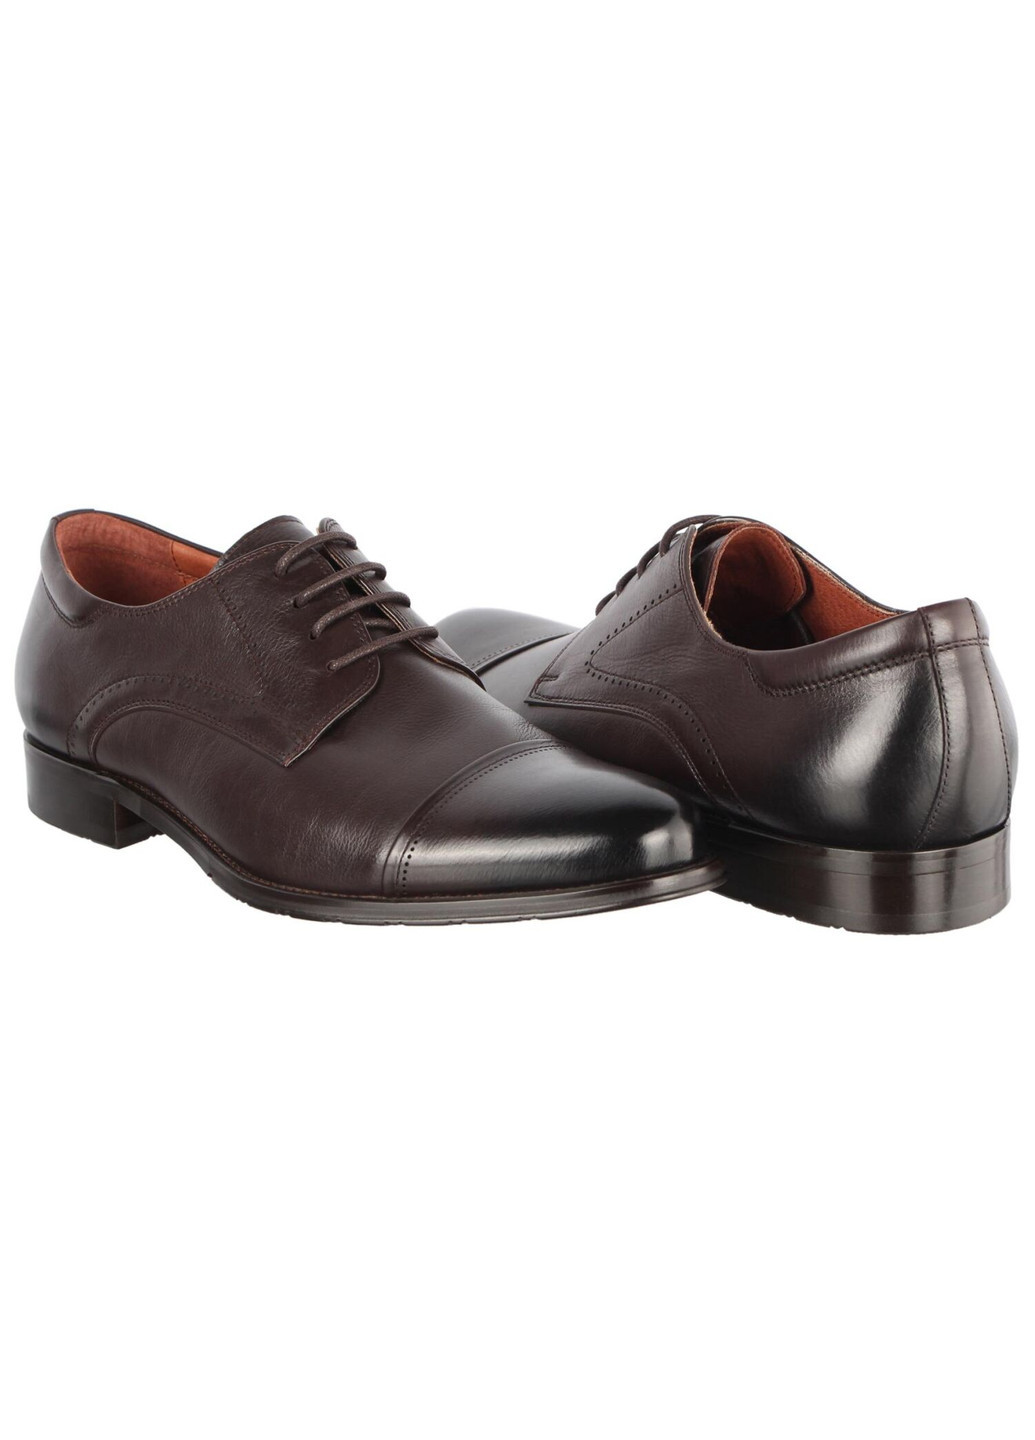 Коричневые мужские классические туфли 196399 Buts на шнурках